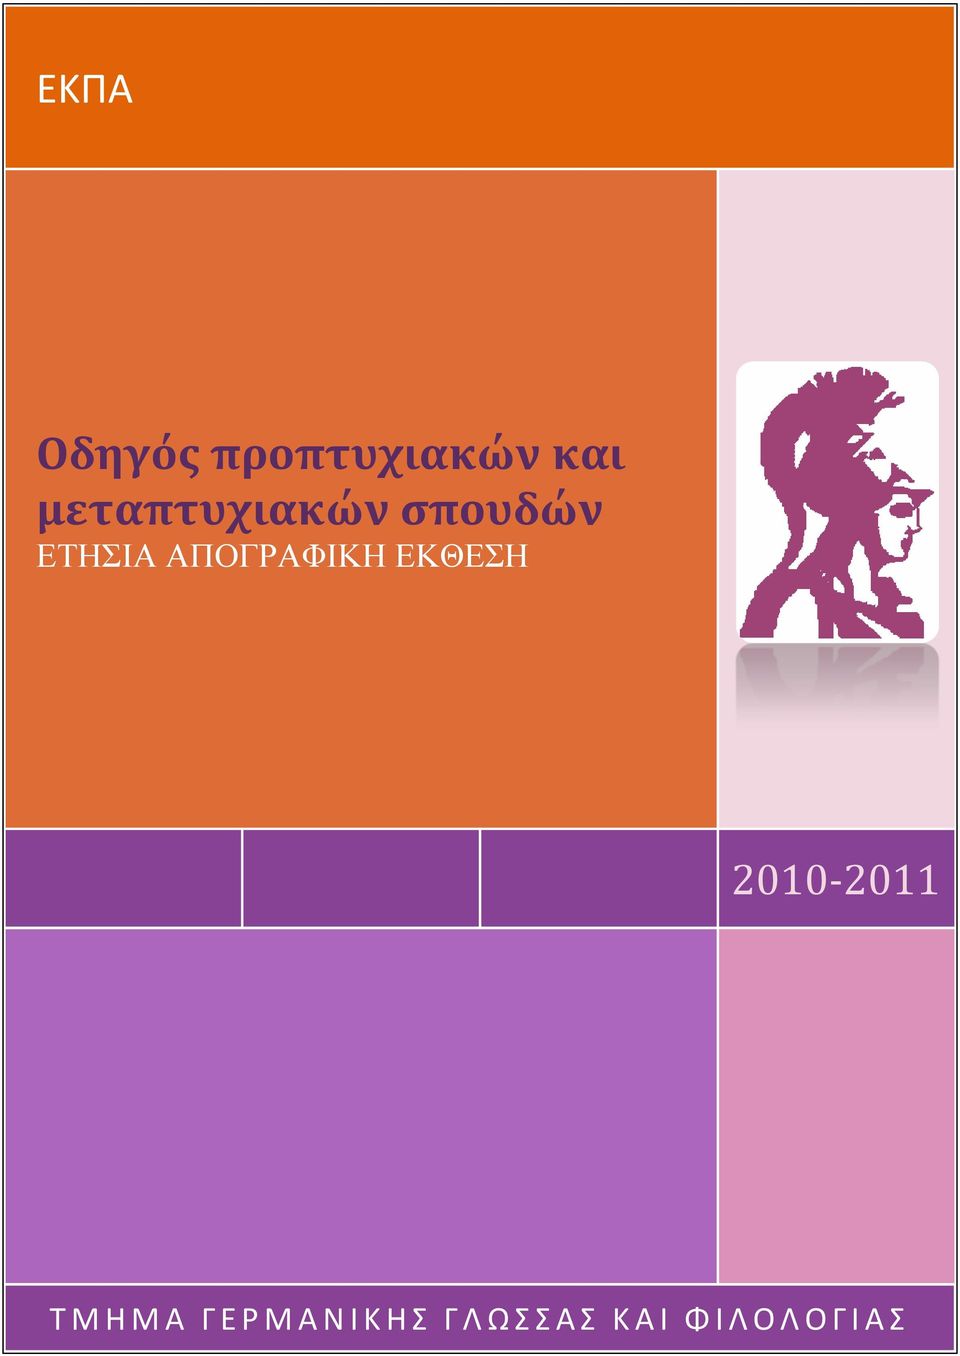 ΑΠΟΓΡΑΦΙΚΗ ΕΚΘΕΣΗ 2010-2011 Τ Μ Η Μ Α